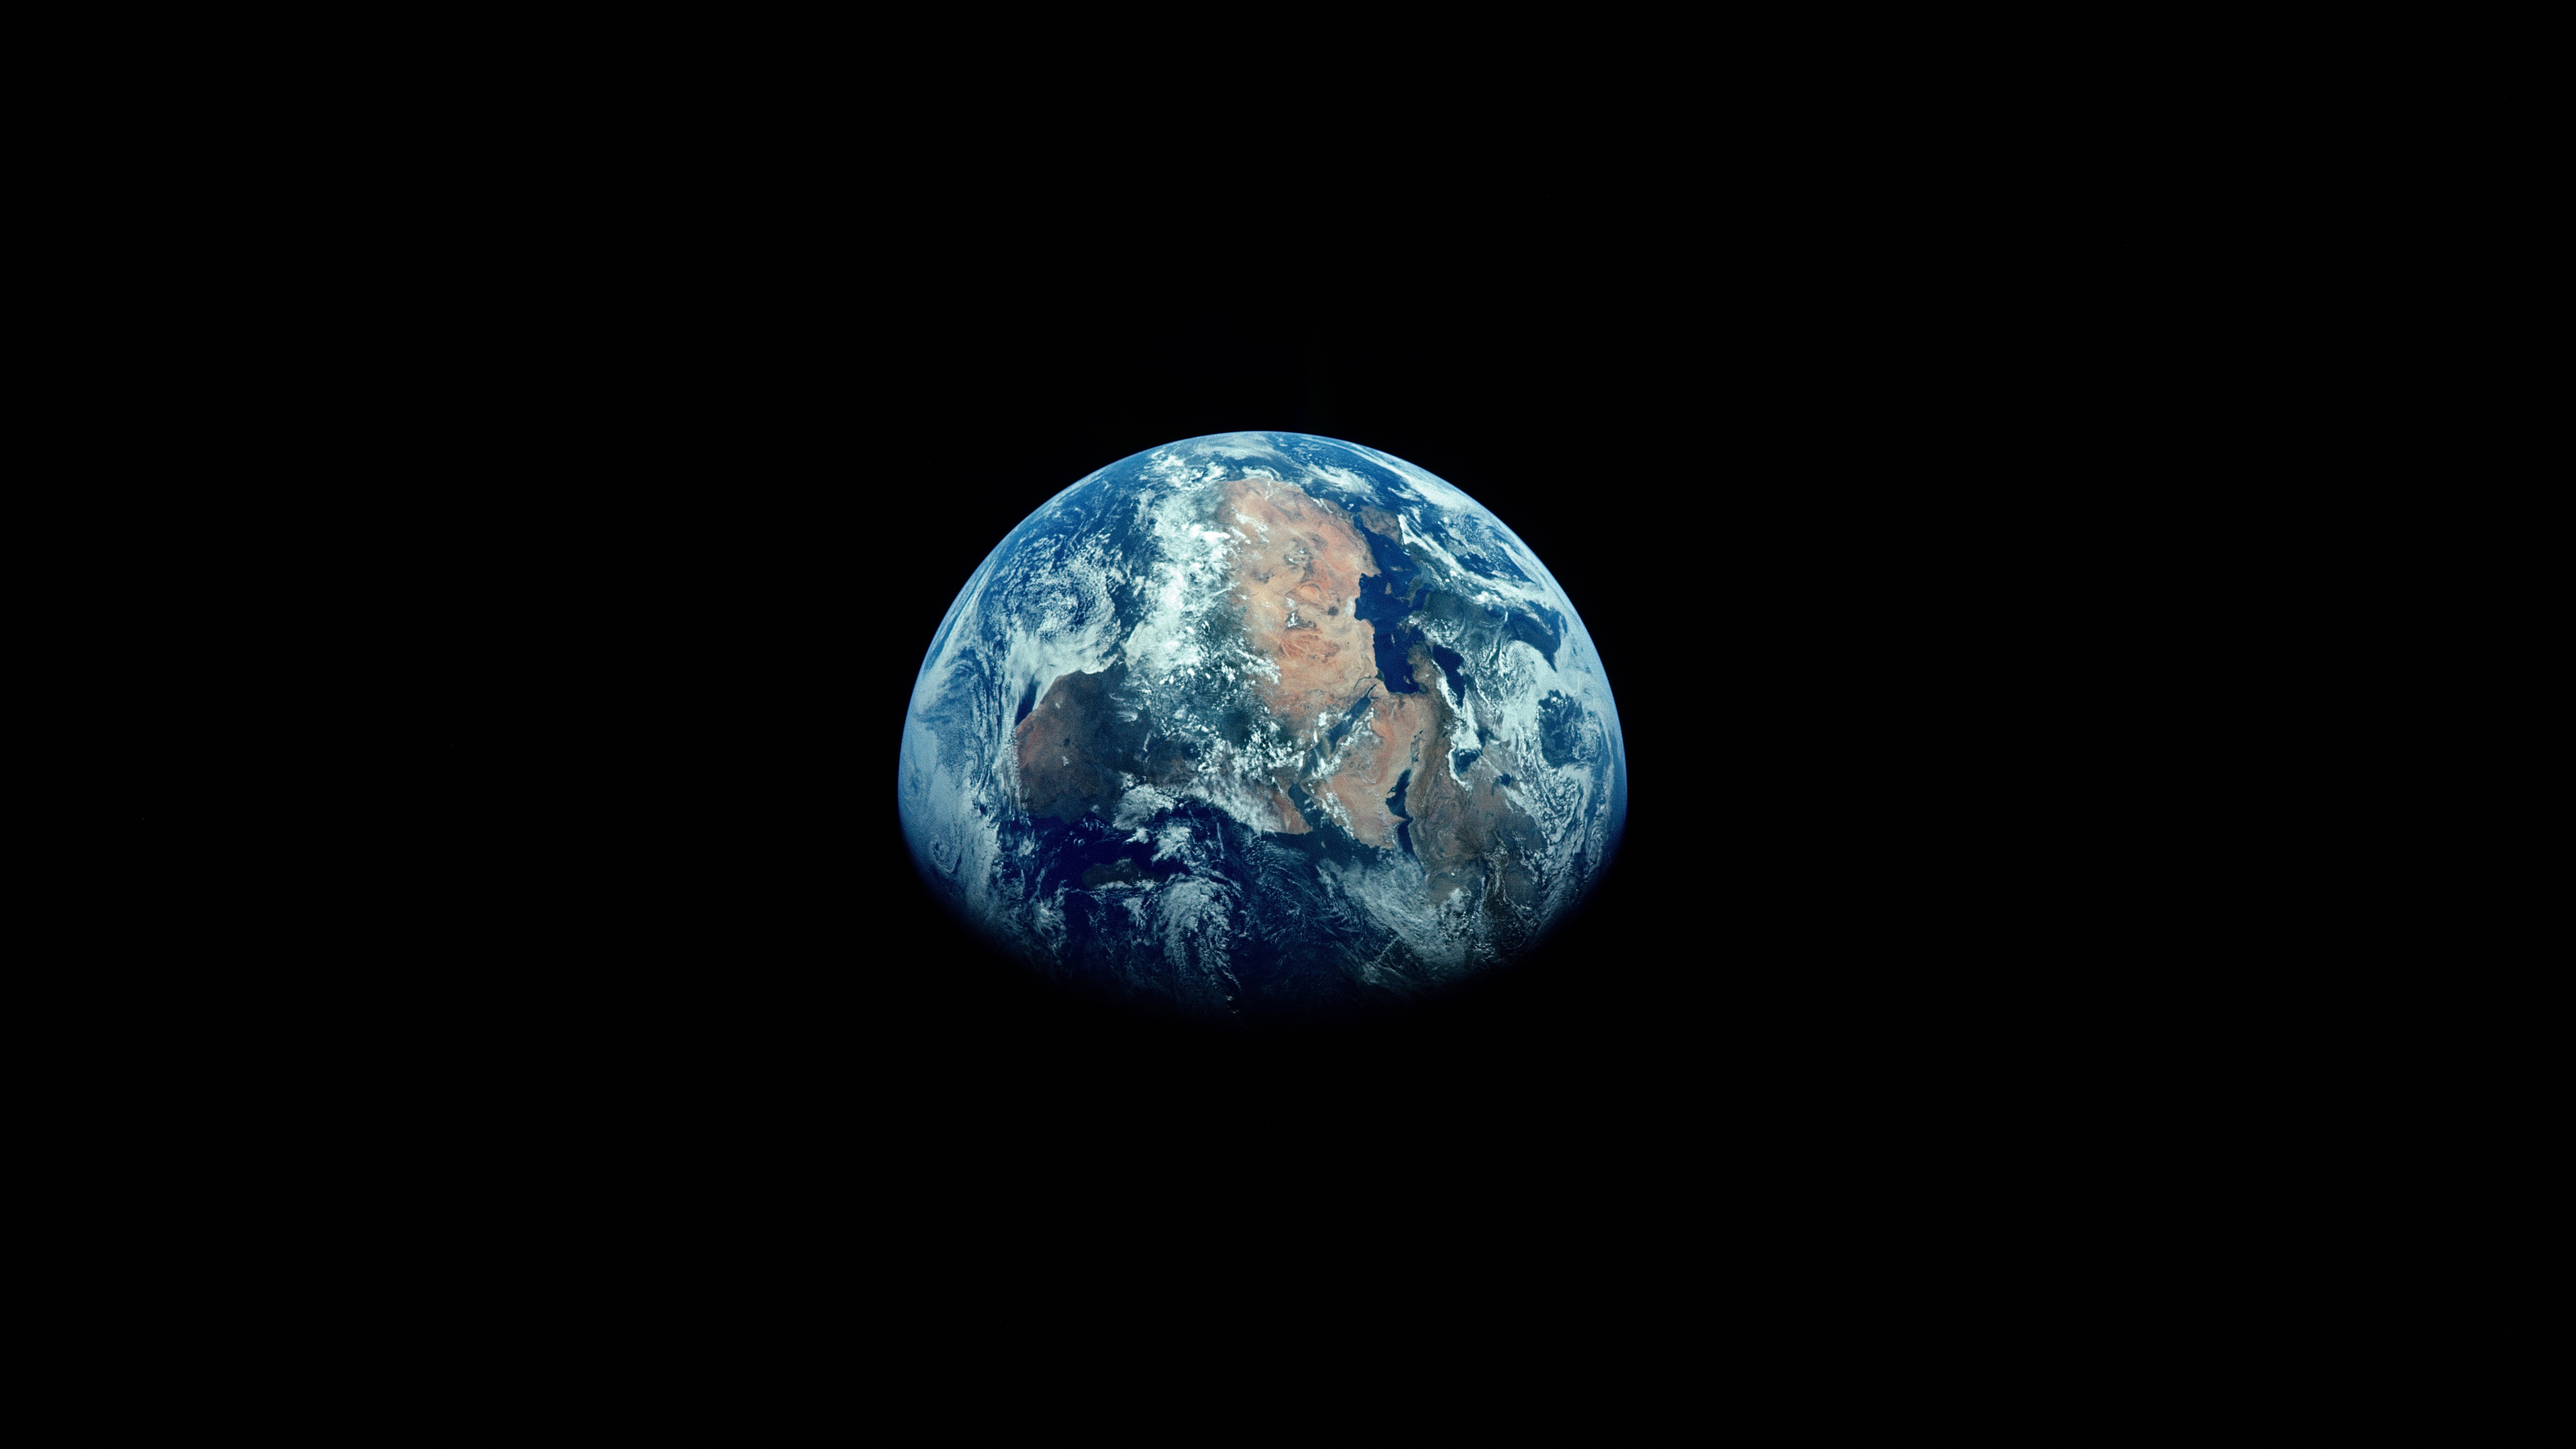 Tận hưởng vẻ đẹp tuyệt đẹp của hành tinh chúng ta với hình nền 4K của đất trái đất. Hình ảnh sẽ đưa bạn đến khắp các châu lục và cho bạn cái nhìn toàn cầu về thế giới xung quanh chúng ta.